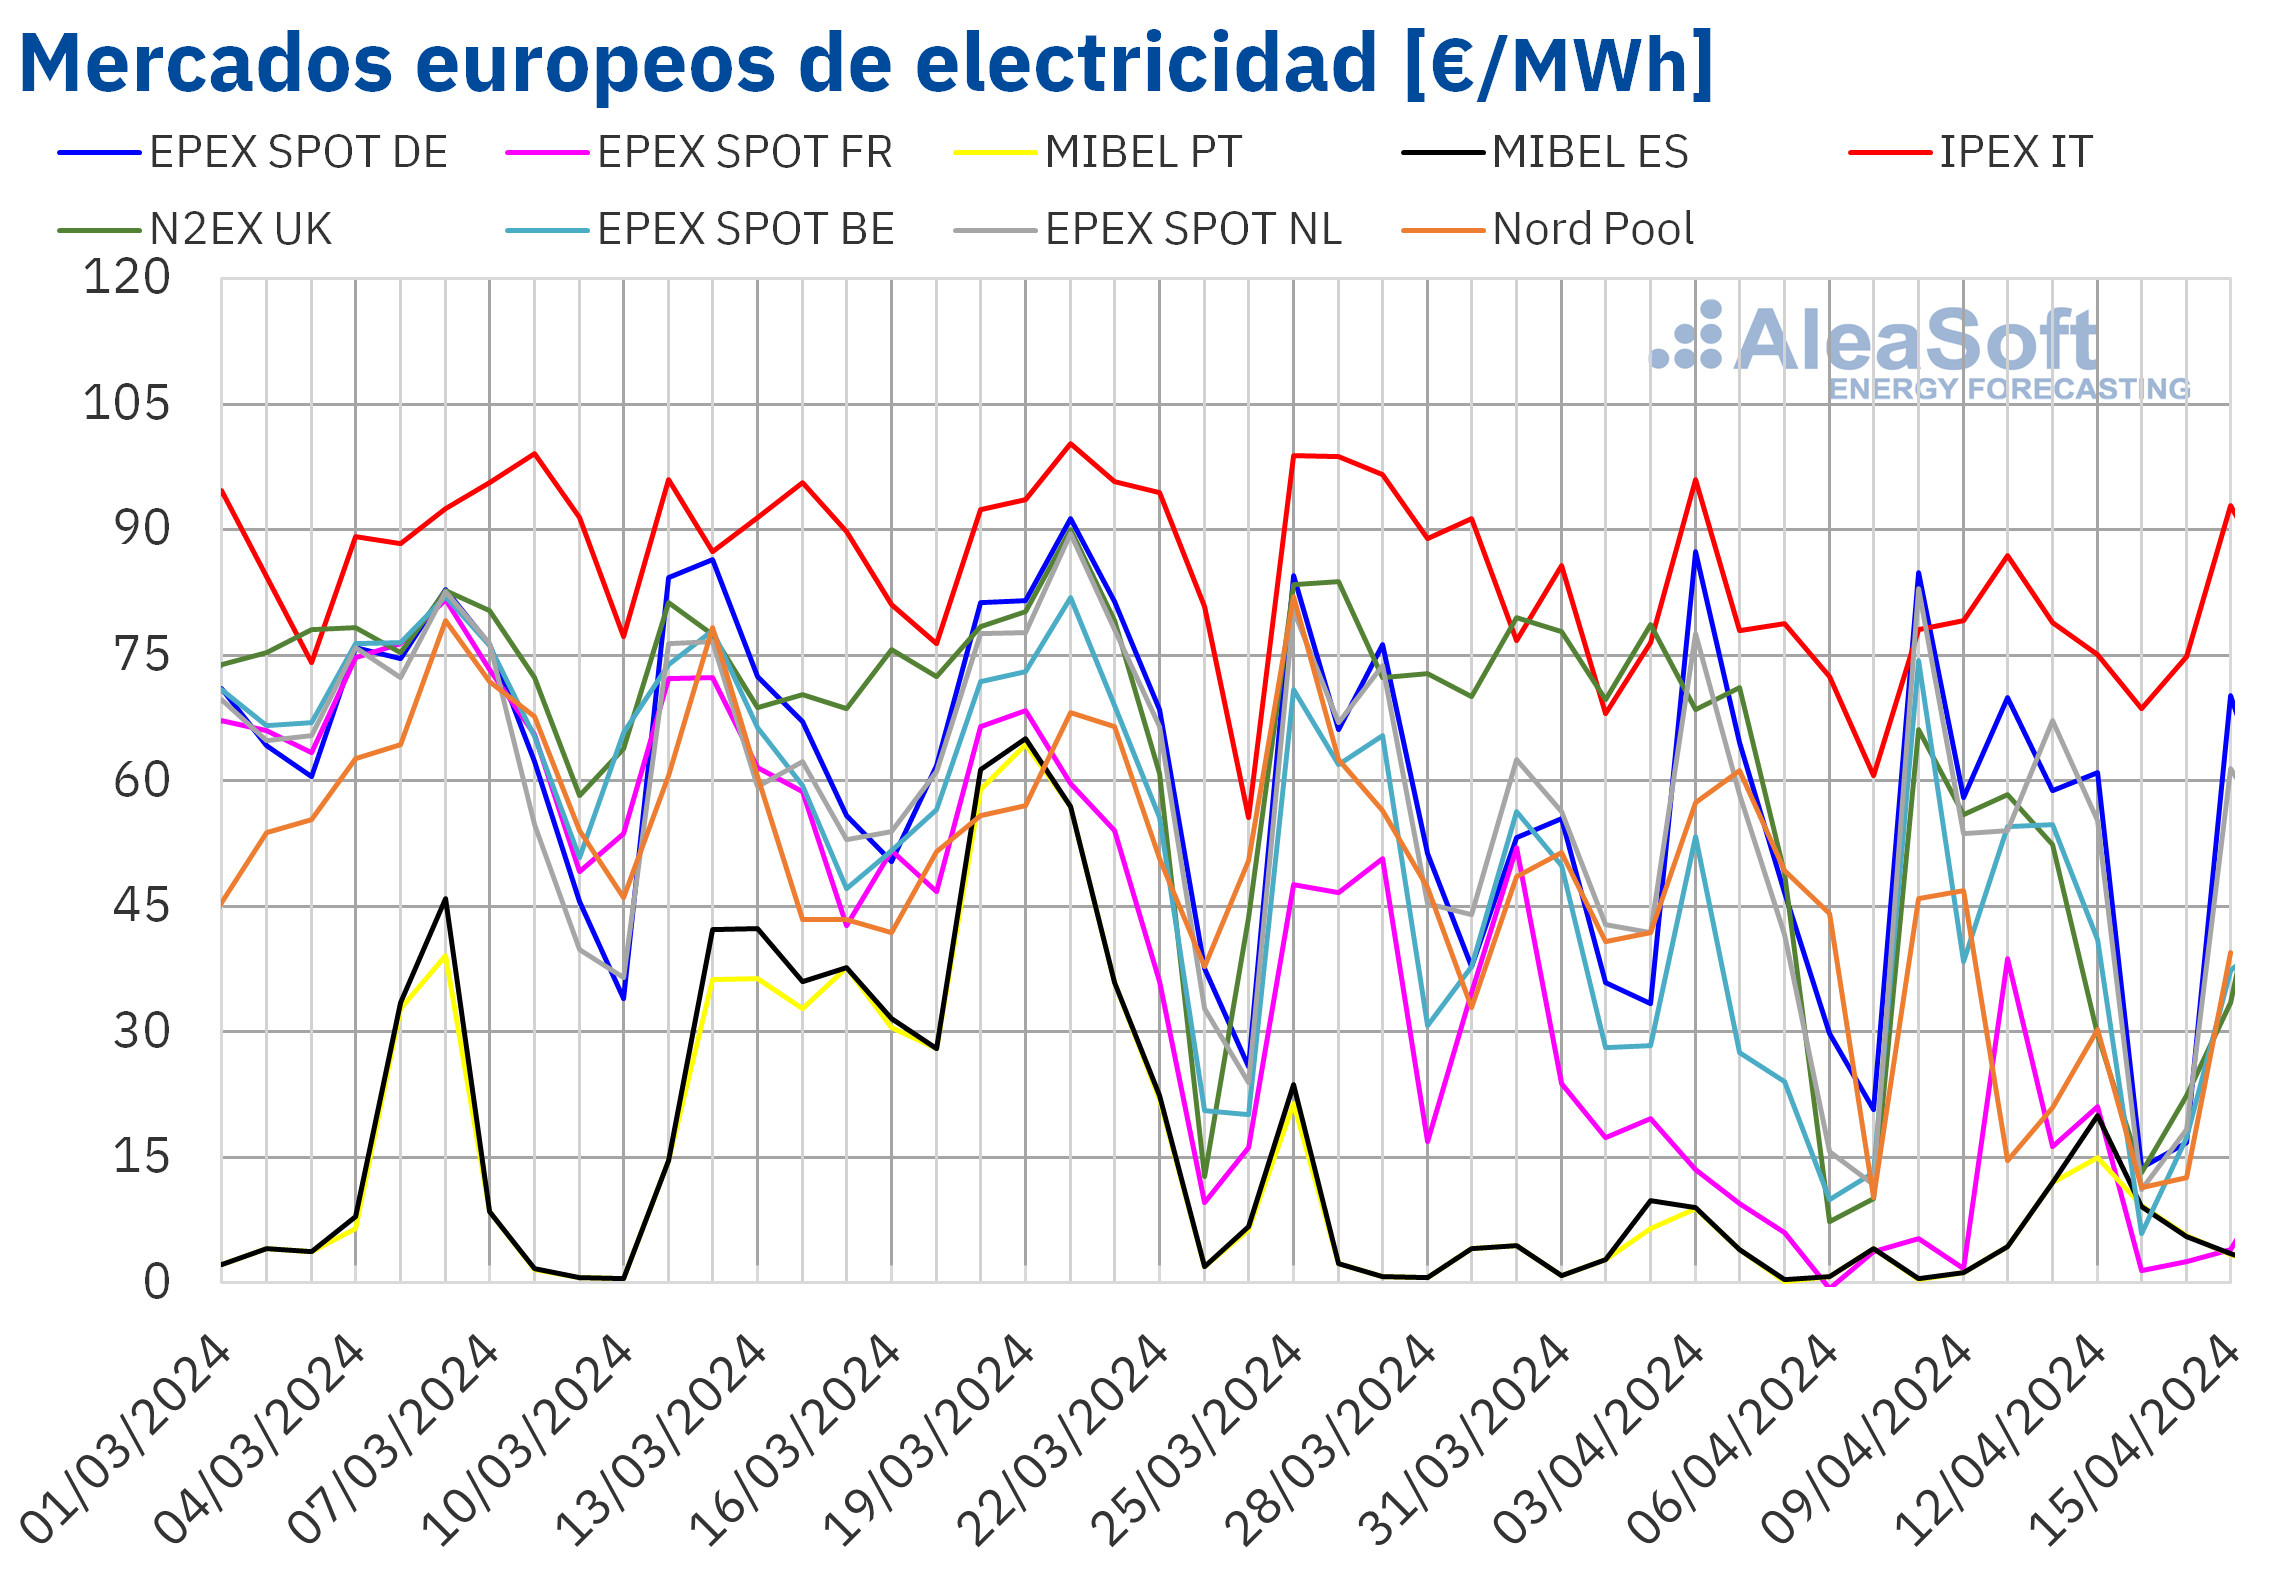 alt - https://static.comunicae.com/photos/notas/1253991/20240415-AleaSoft-Precios-mercados-europeos-electricidad.png